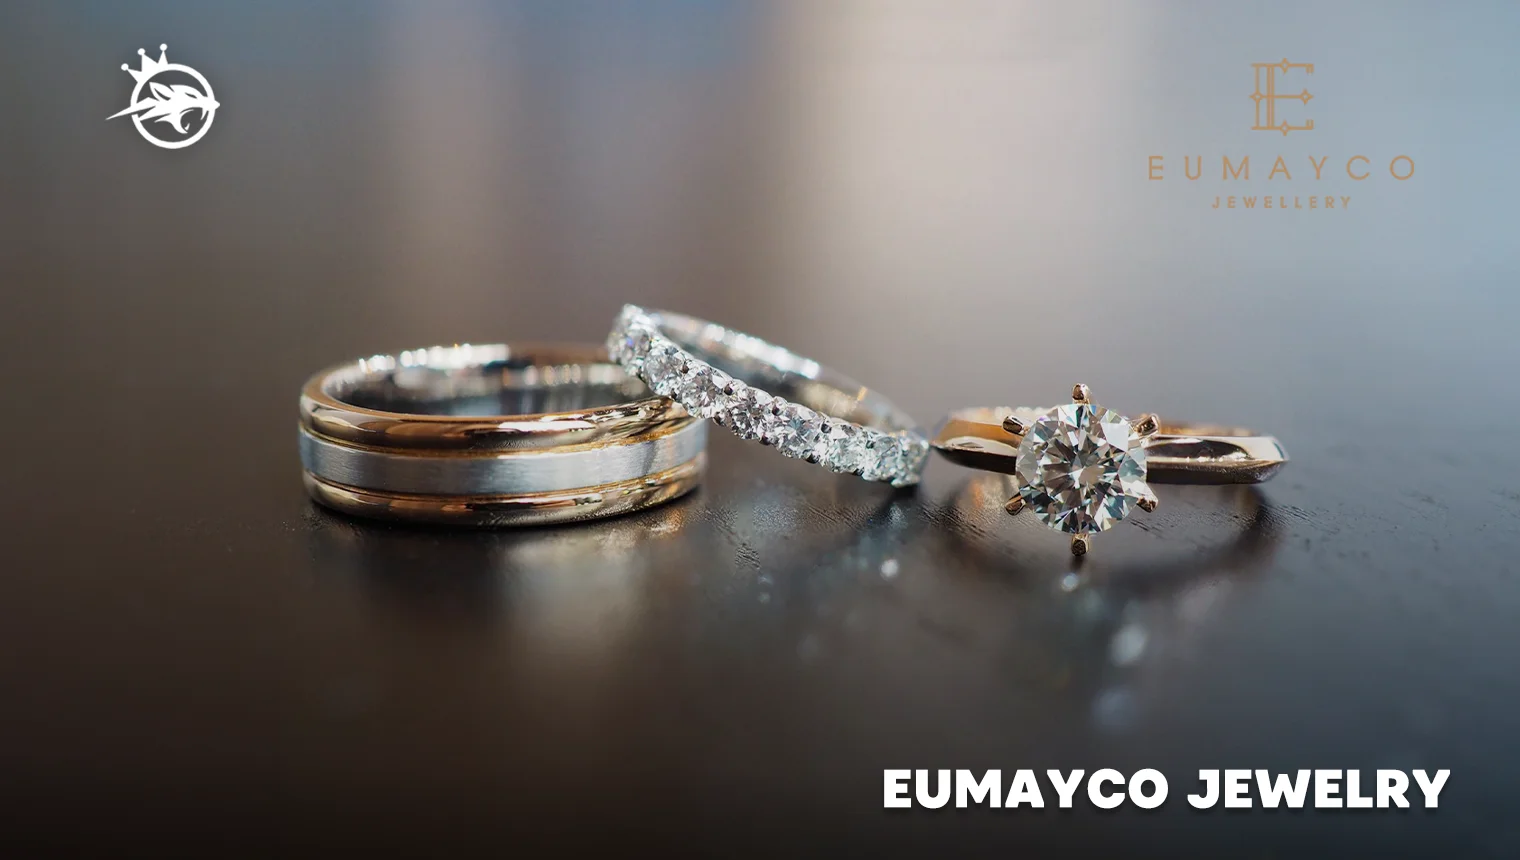 Eumayco Jewelry